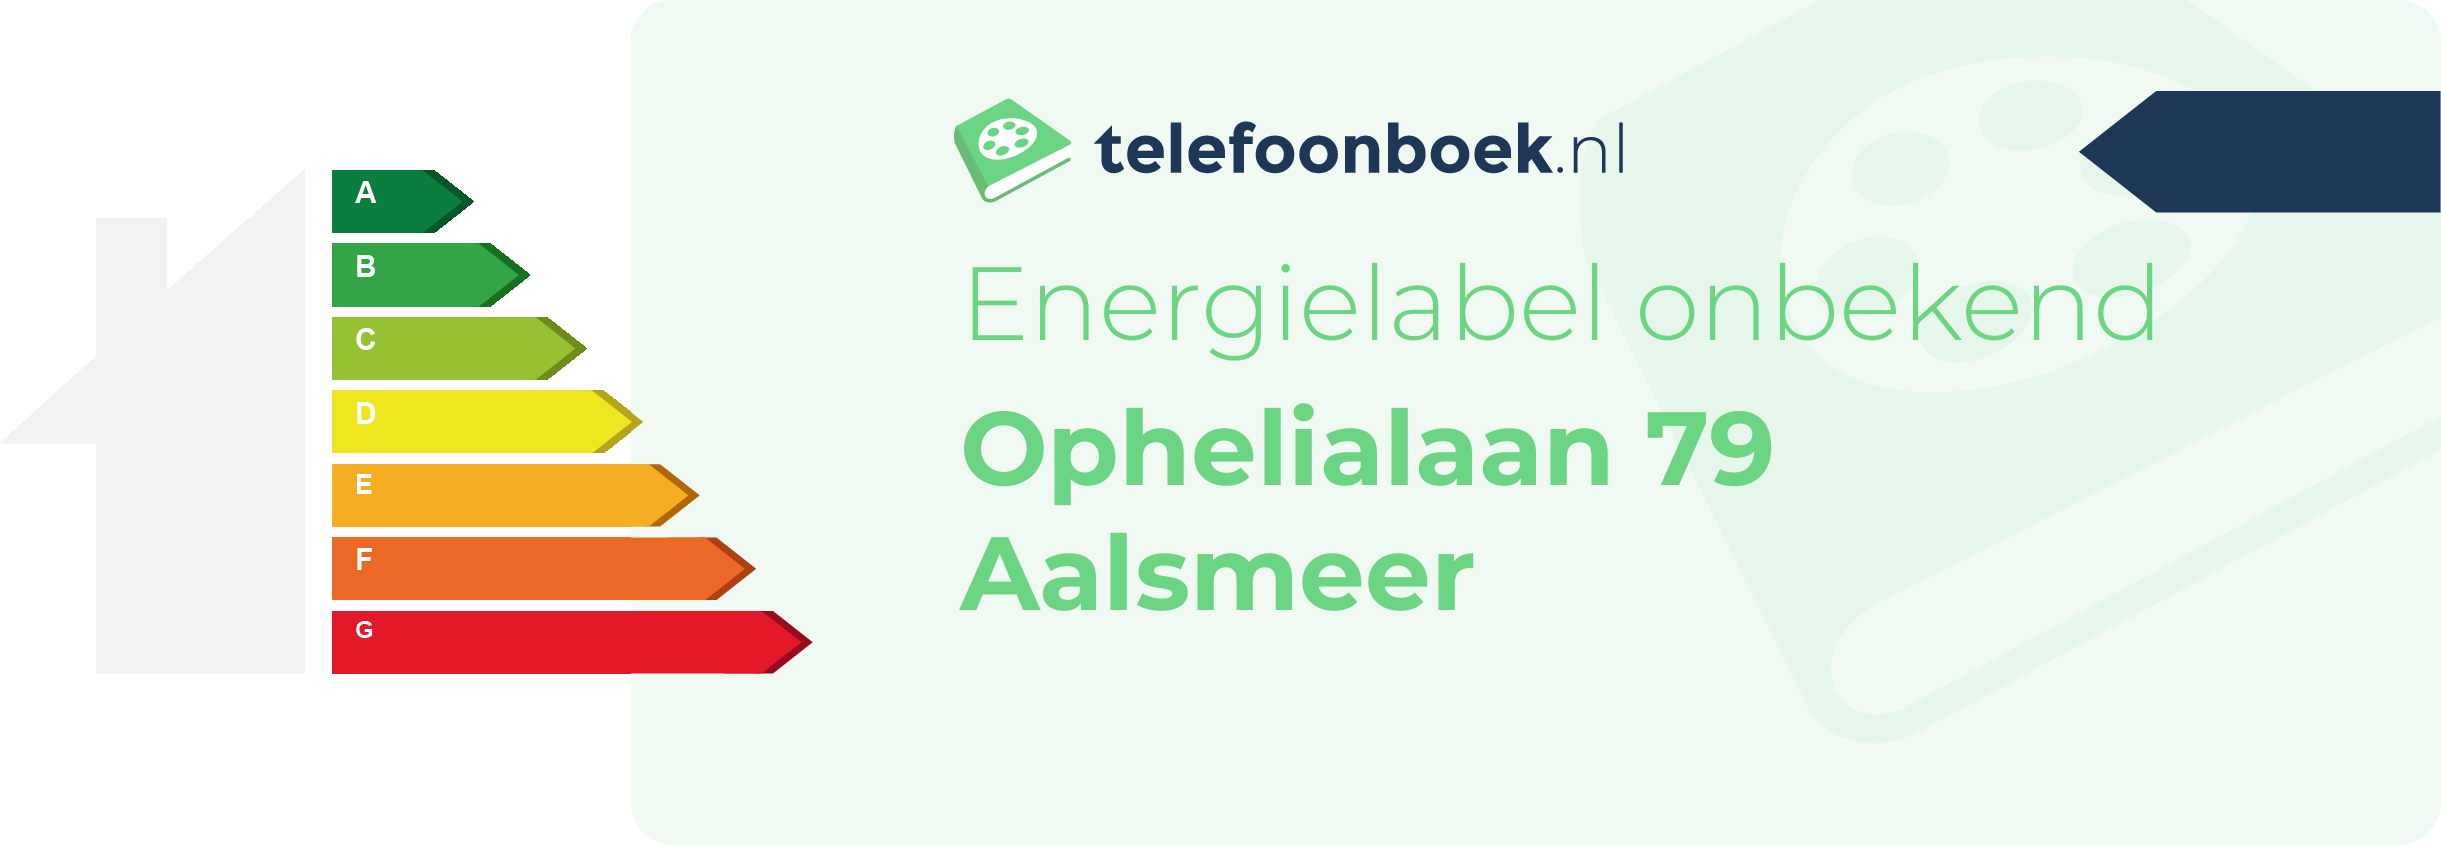 Energielabel Ophelialaan 79 Aalsmeer